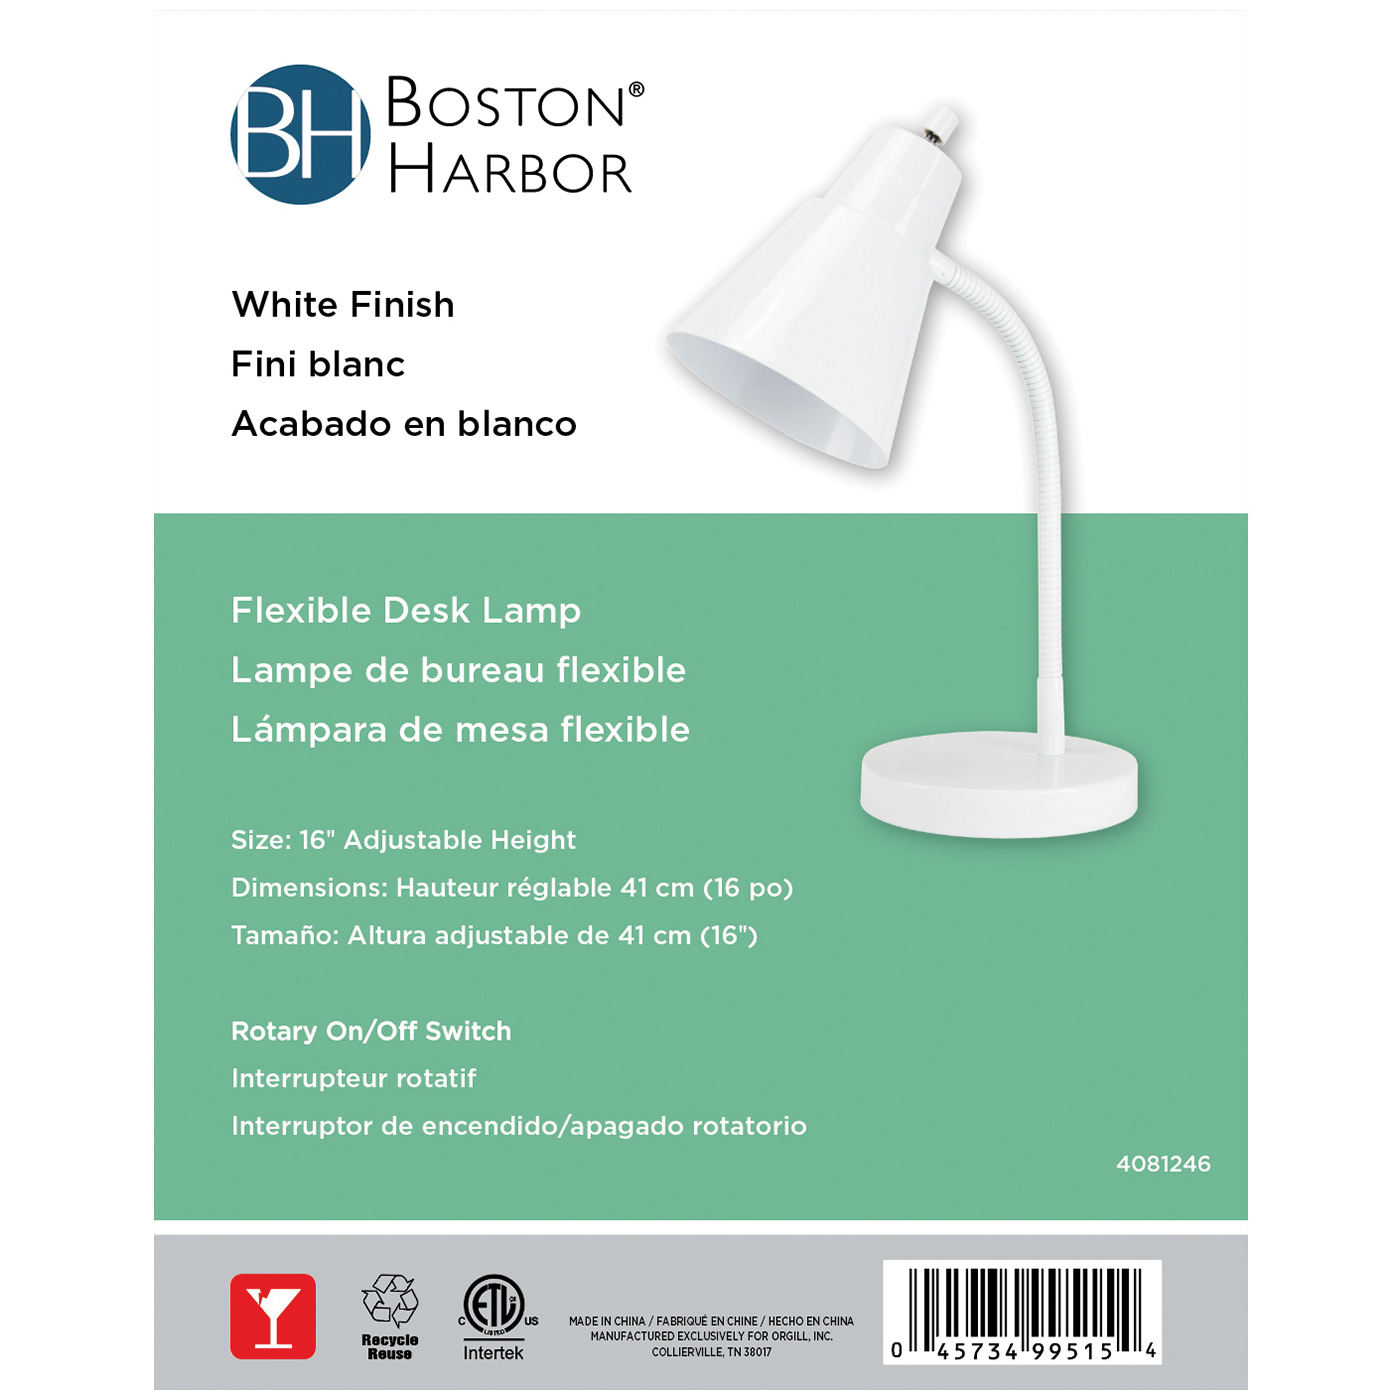 Boston Harbor TL-TB-170-WH-3L Flexible Desk Lamp, 120 V, 60 W, 1-Lamp, CFL Lamp, White Fixture, White - 3